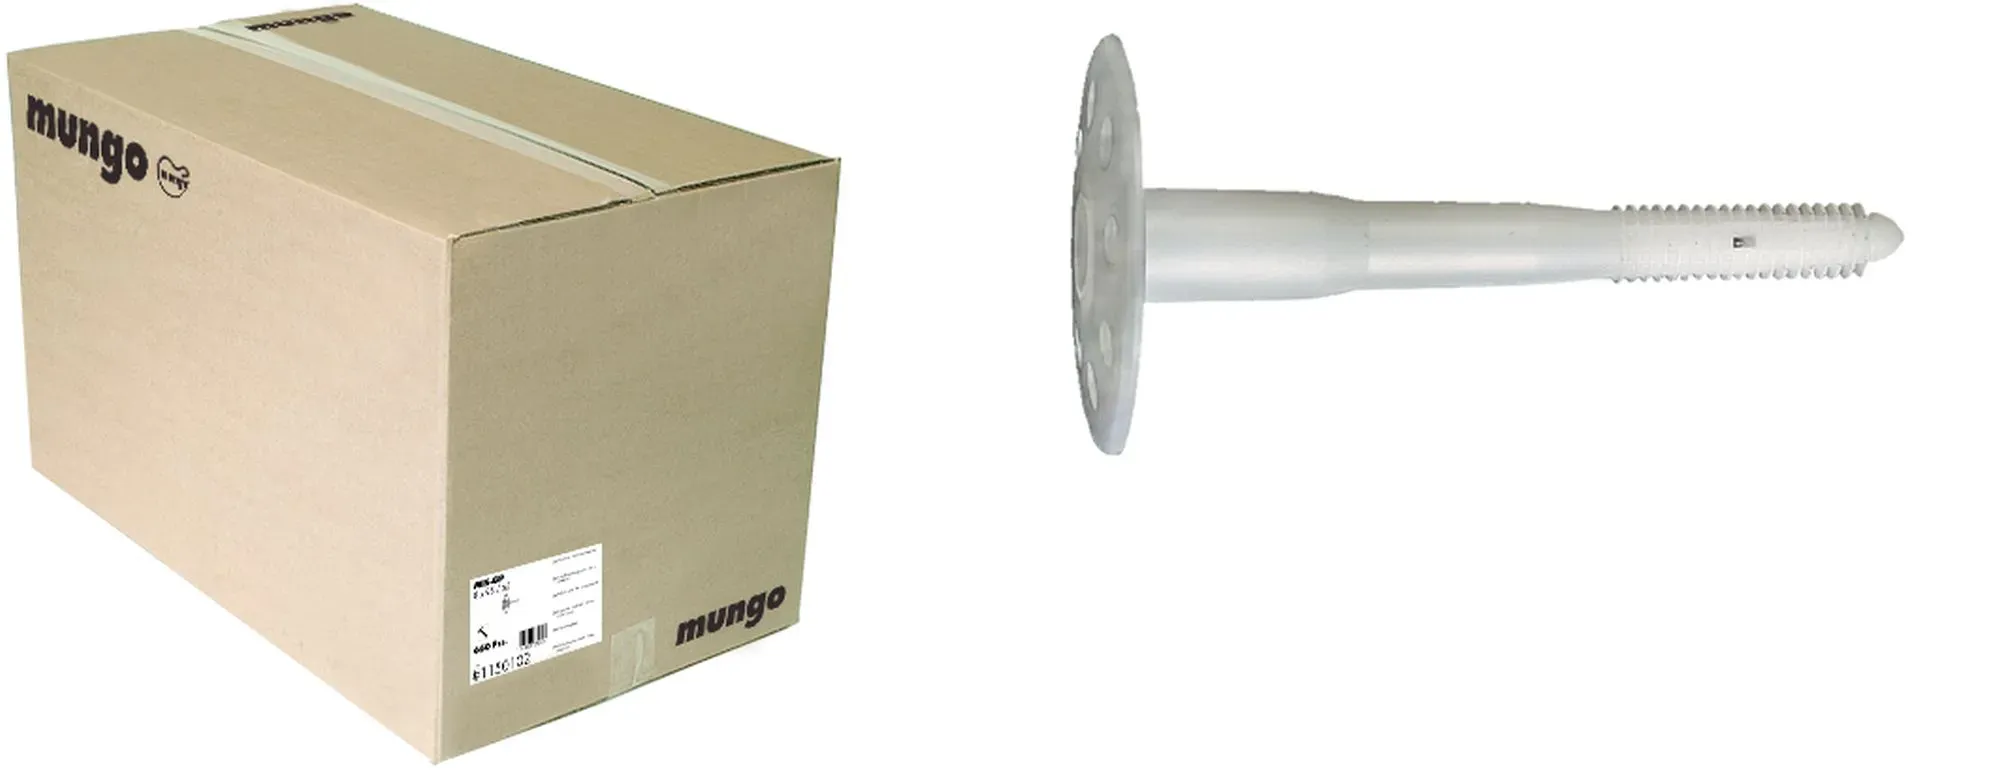 1600 Stück Mungo Isolierplattenpilz, Ø 45mm, in Industrieverpackung 8 x 125